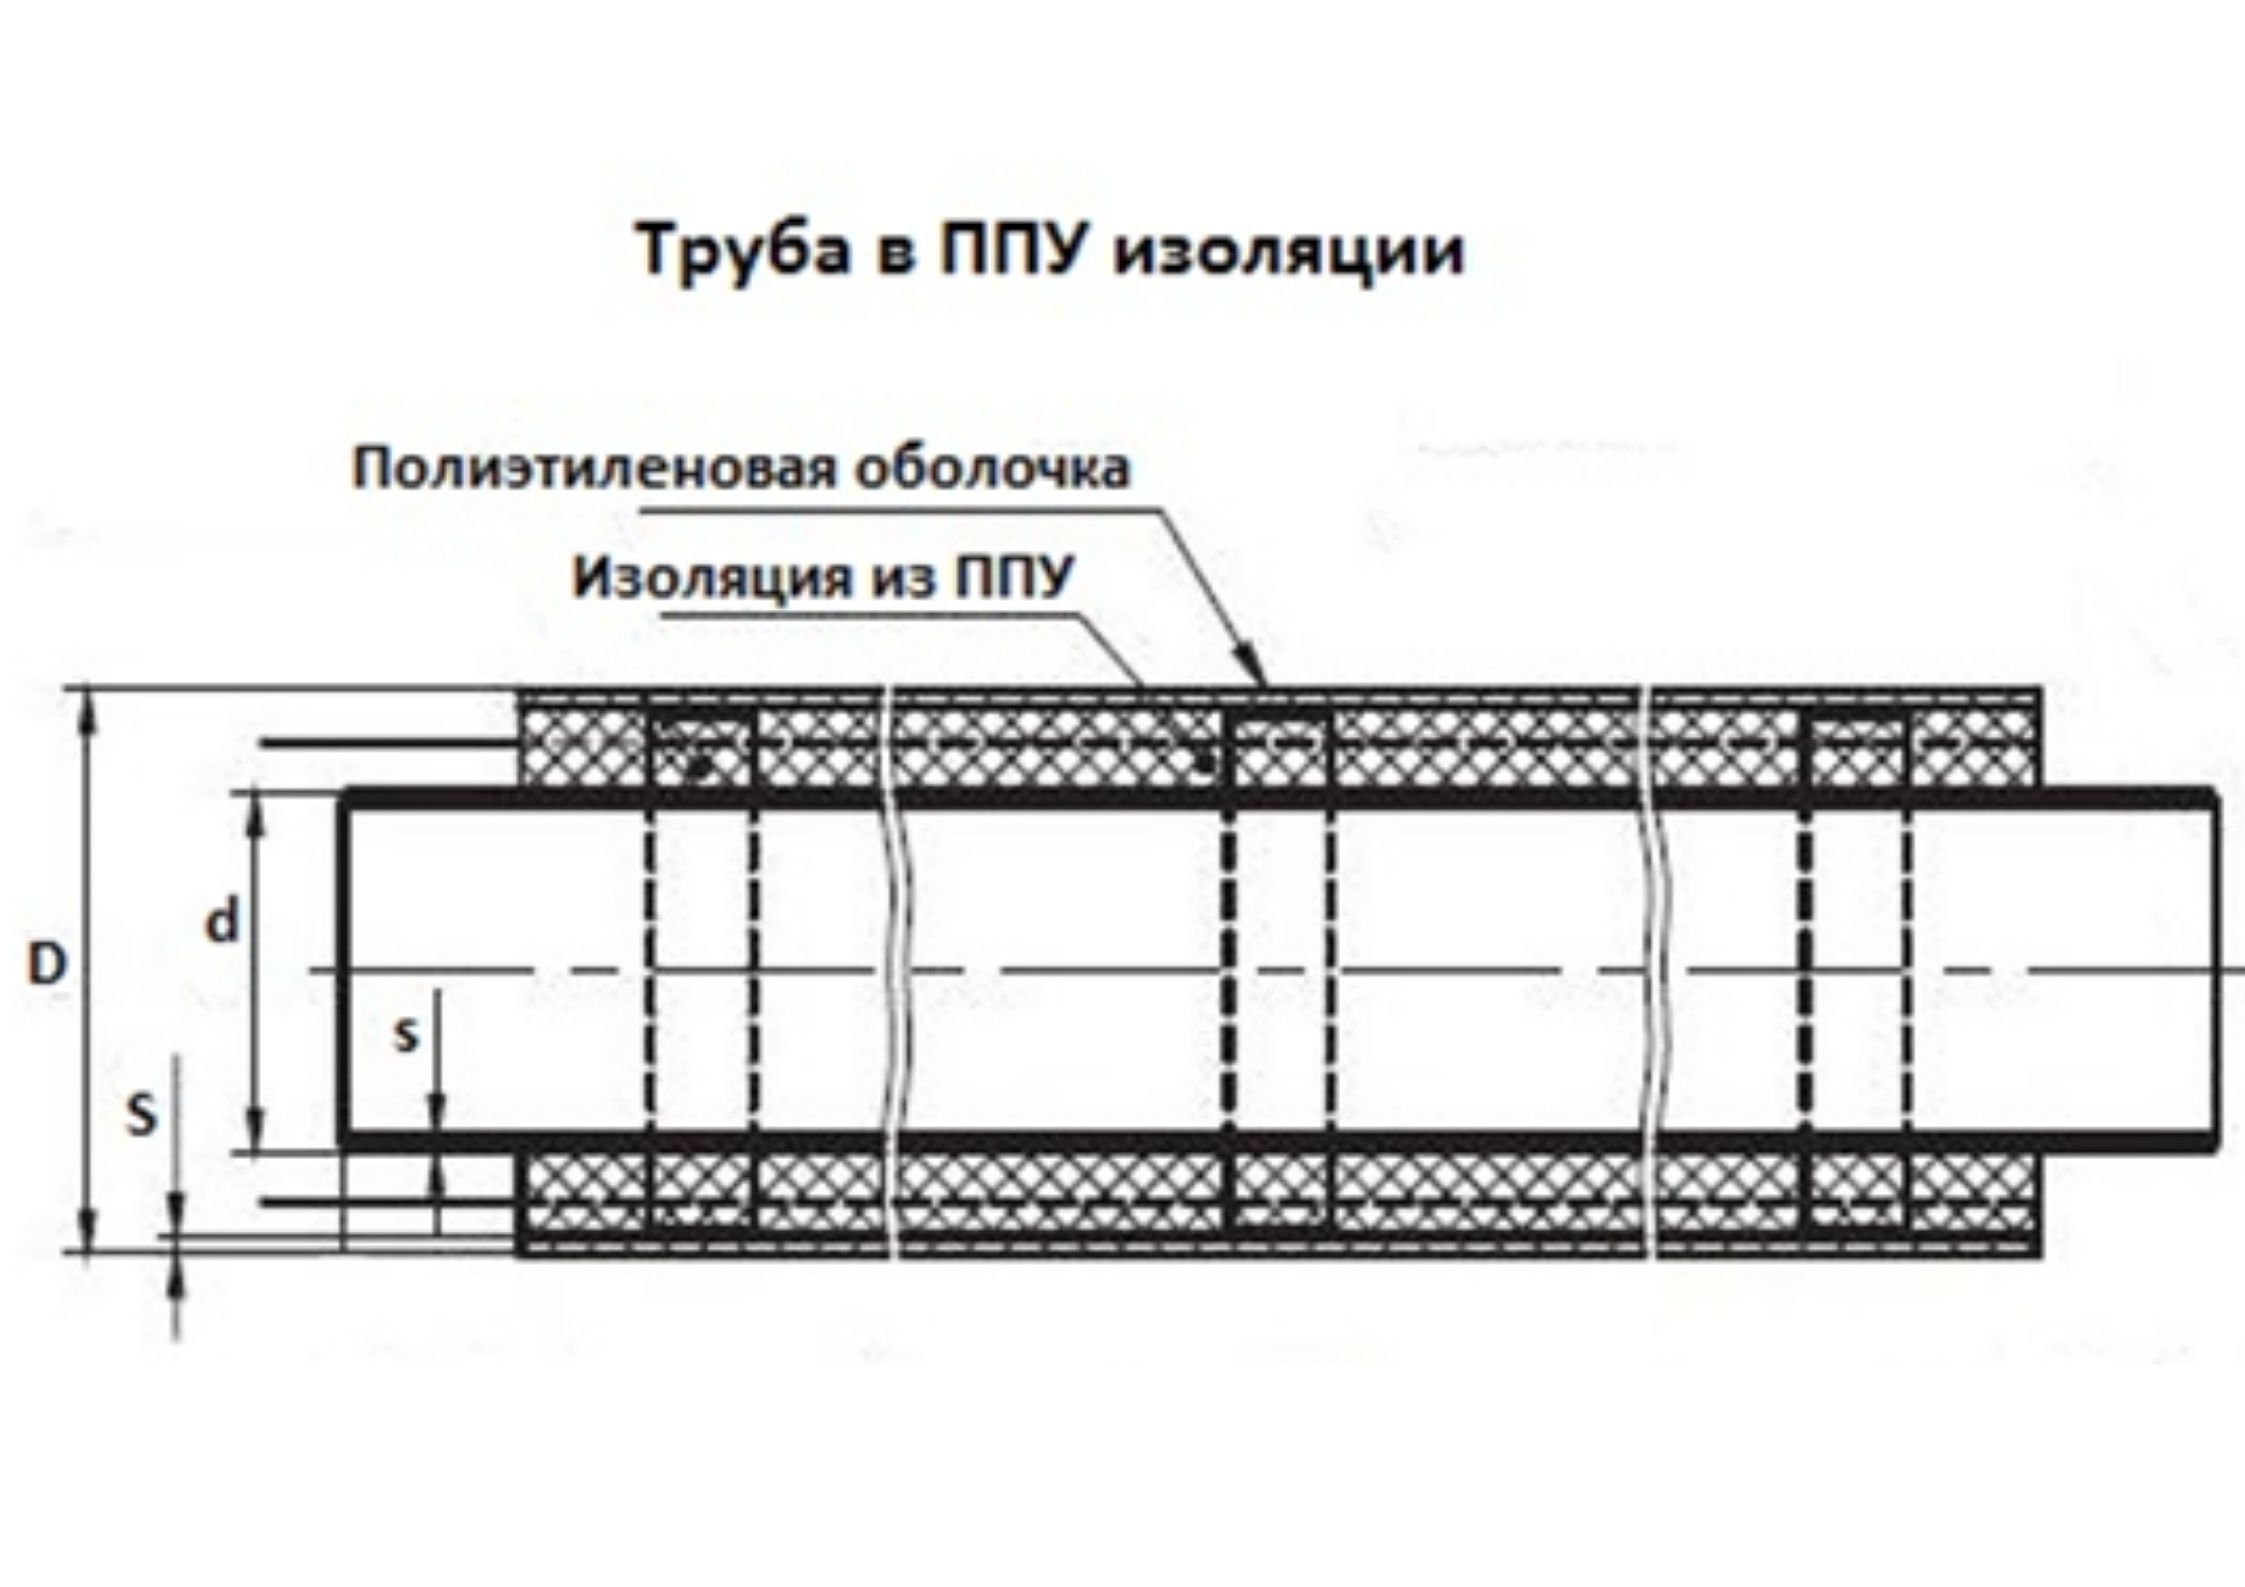 Трубы ППУ 150 в мм «Альфа-тех» в Казани